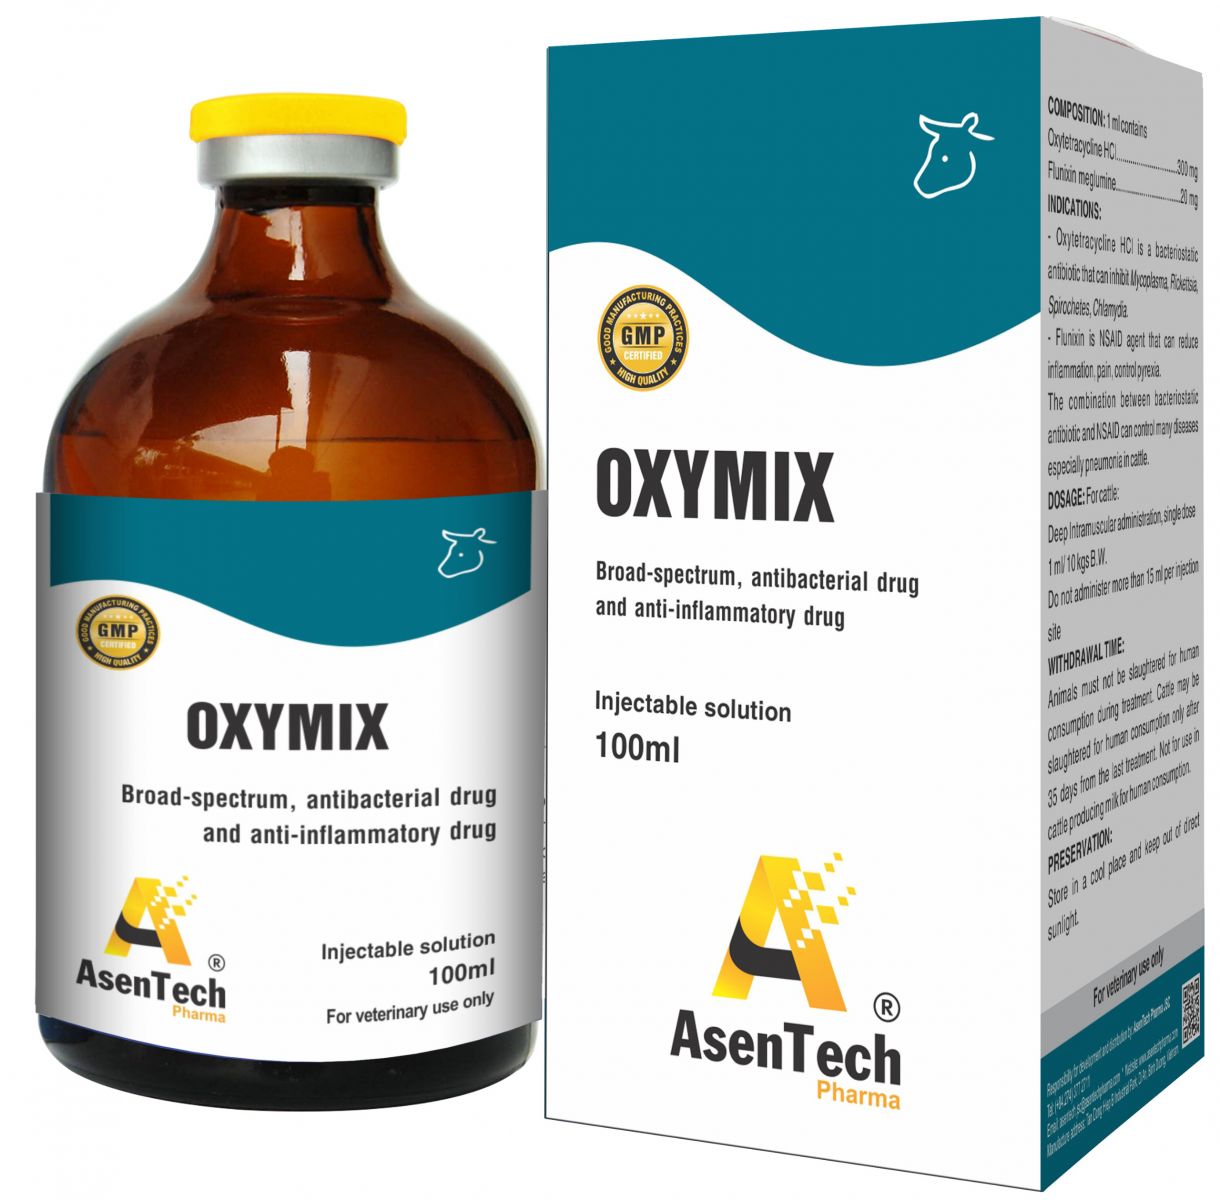 OXYMIX